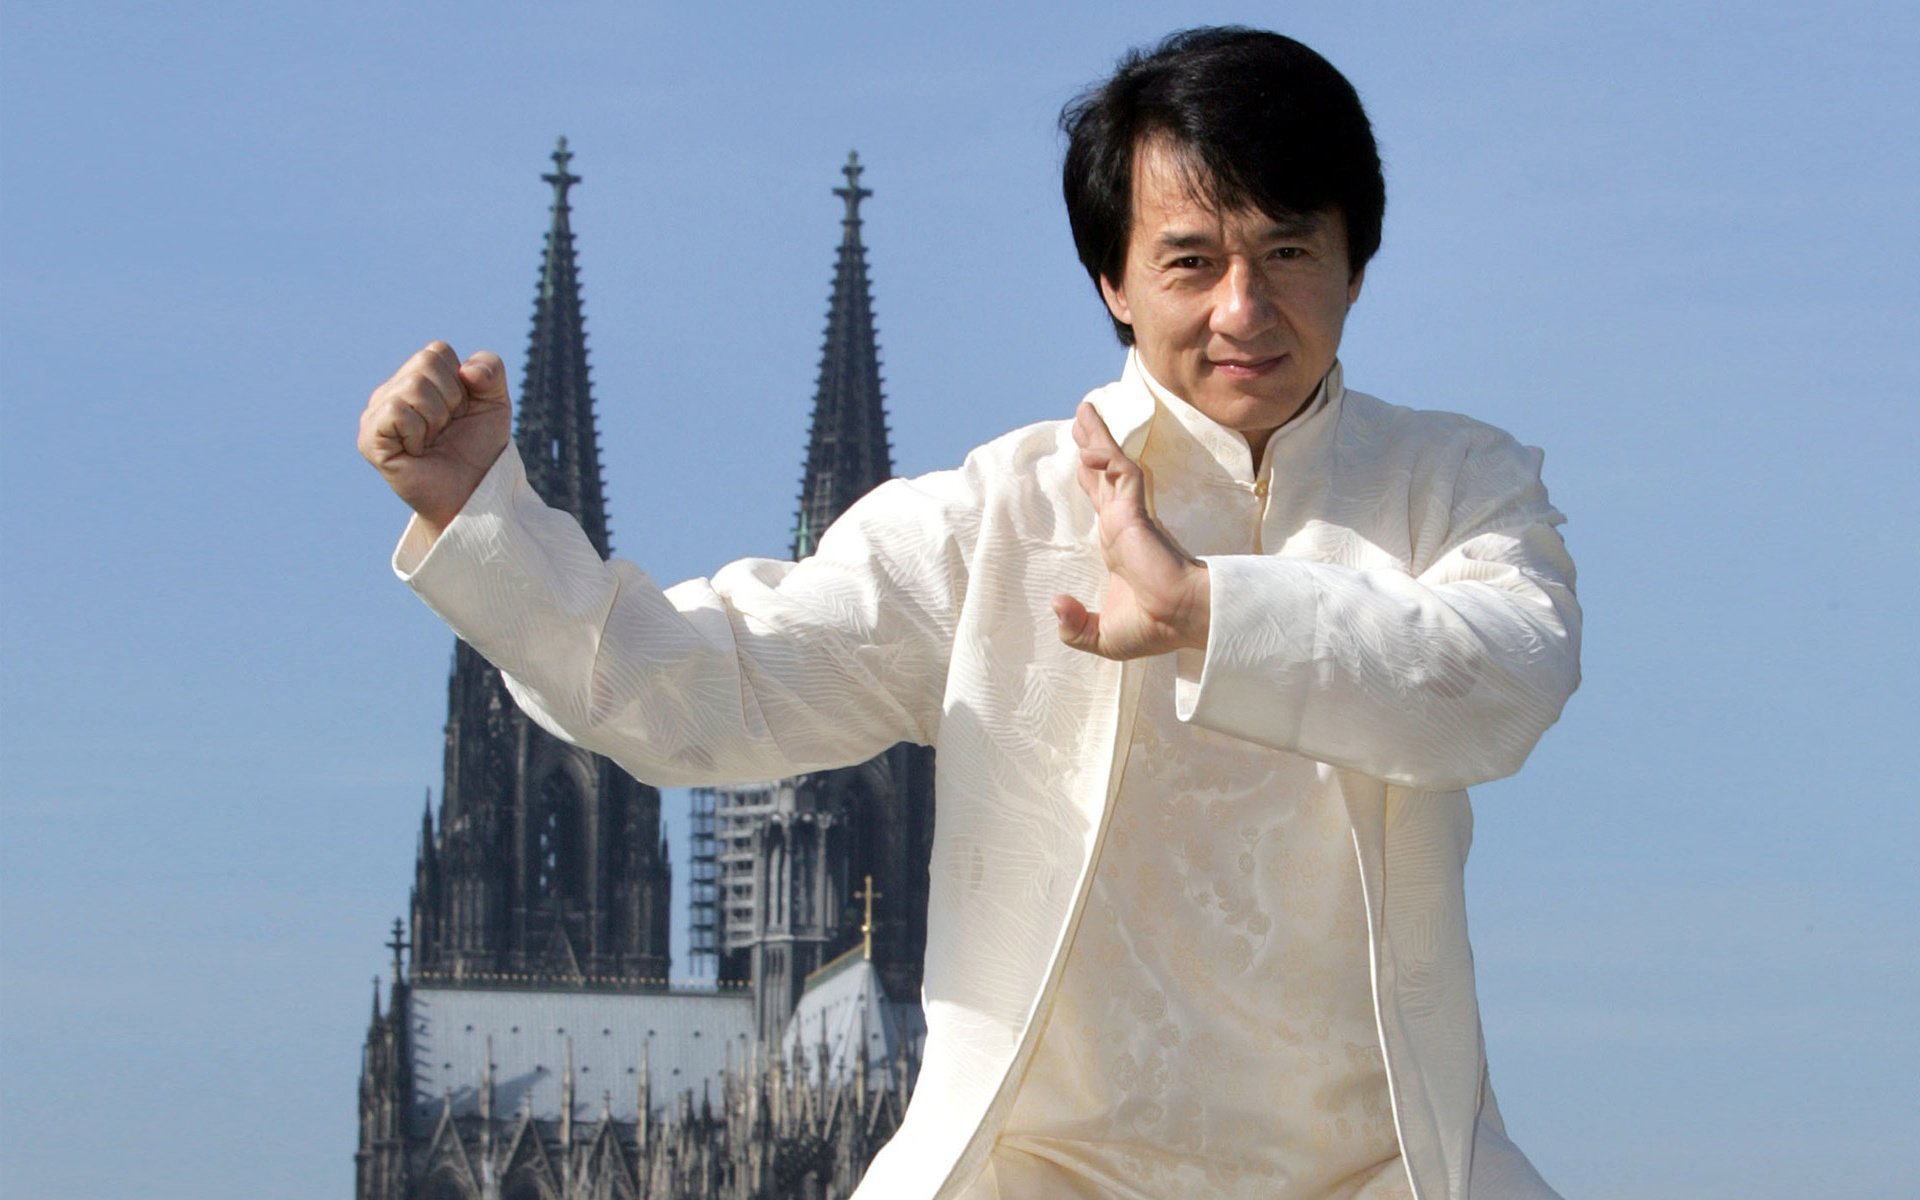 Джекі Чан (Jackie Chan). Біографія. Фото. Особисте життя